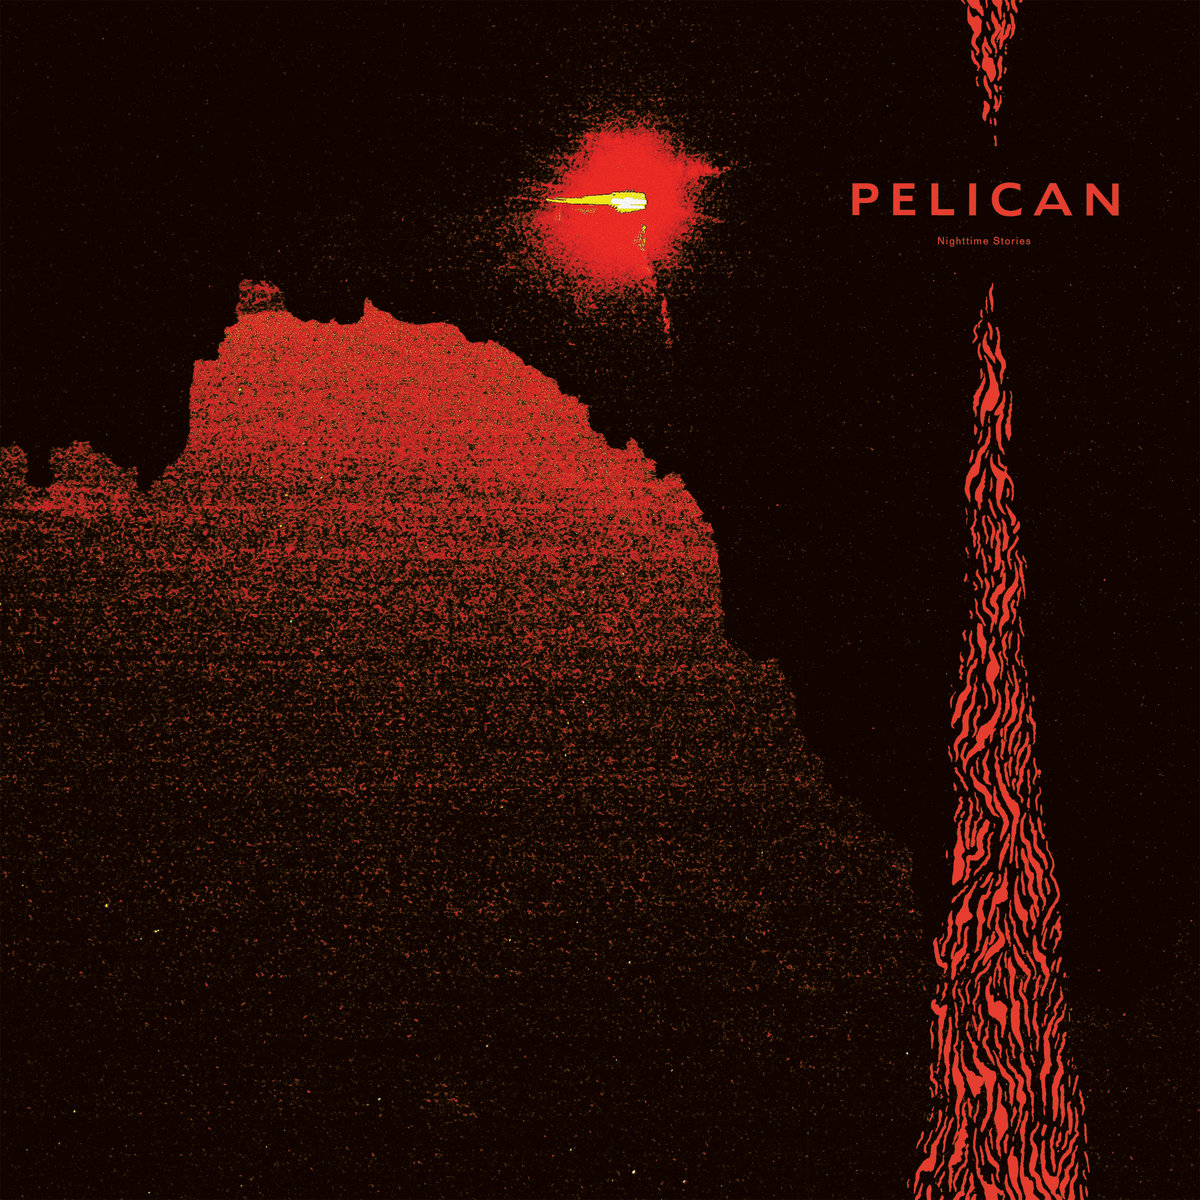 ÐšÐ°Ñ€Ñ‚Ð¸Ð½ÐºÐ¸ Ð¿Ð¾ Ð·Ð°Ð¿Ñ€Ð¾ÑÑƒ Pelican â€” Nighttime Stories